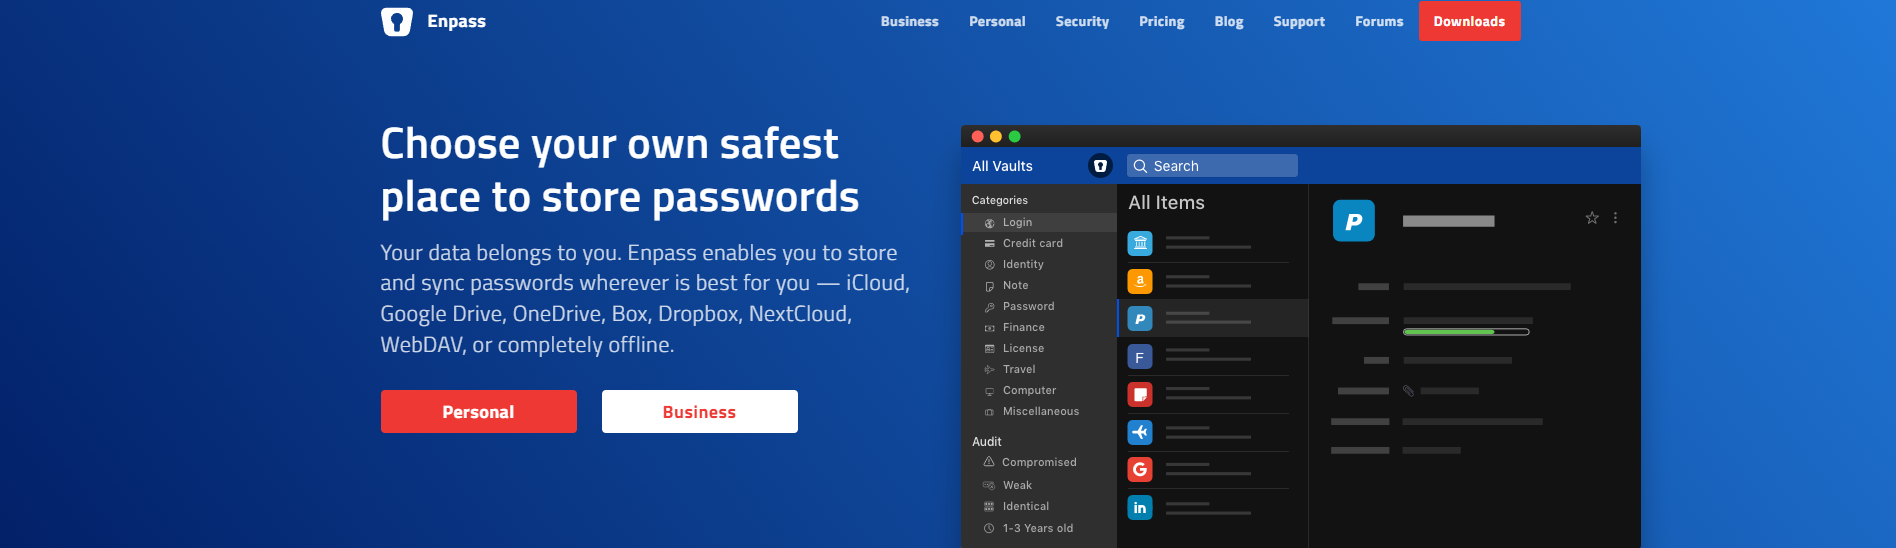 Enpass safest place to store passwords